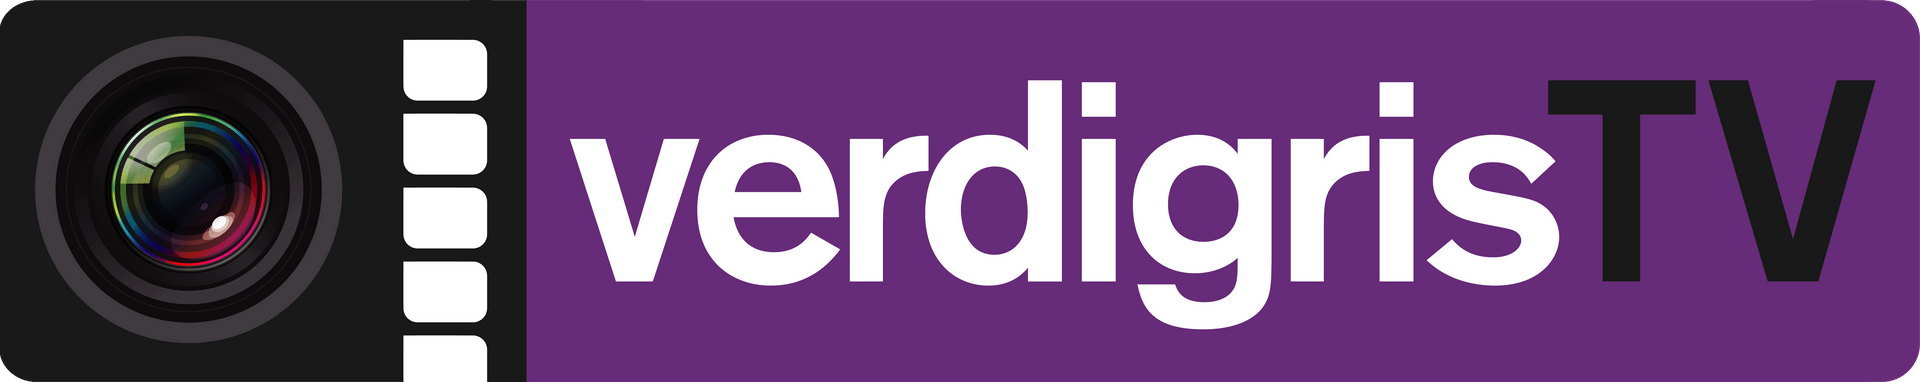 logo-verdigris-02-1